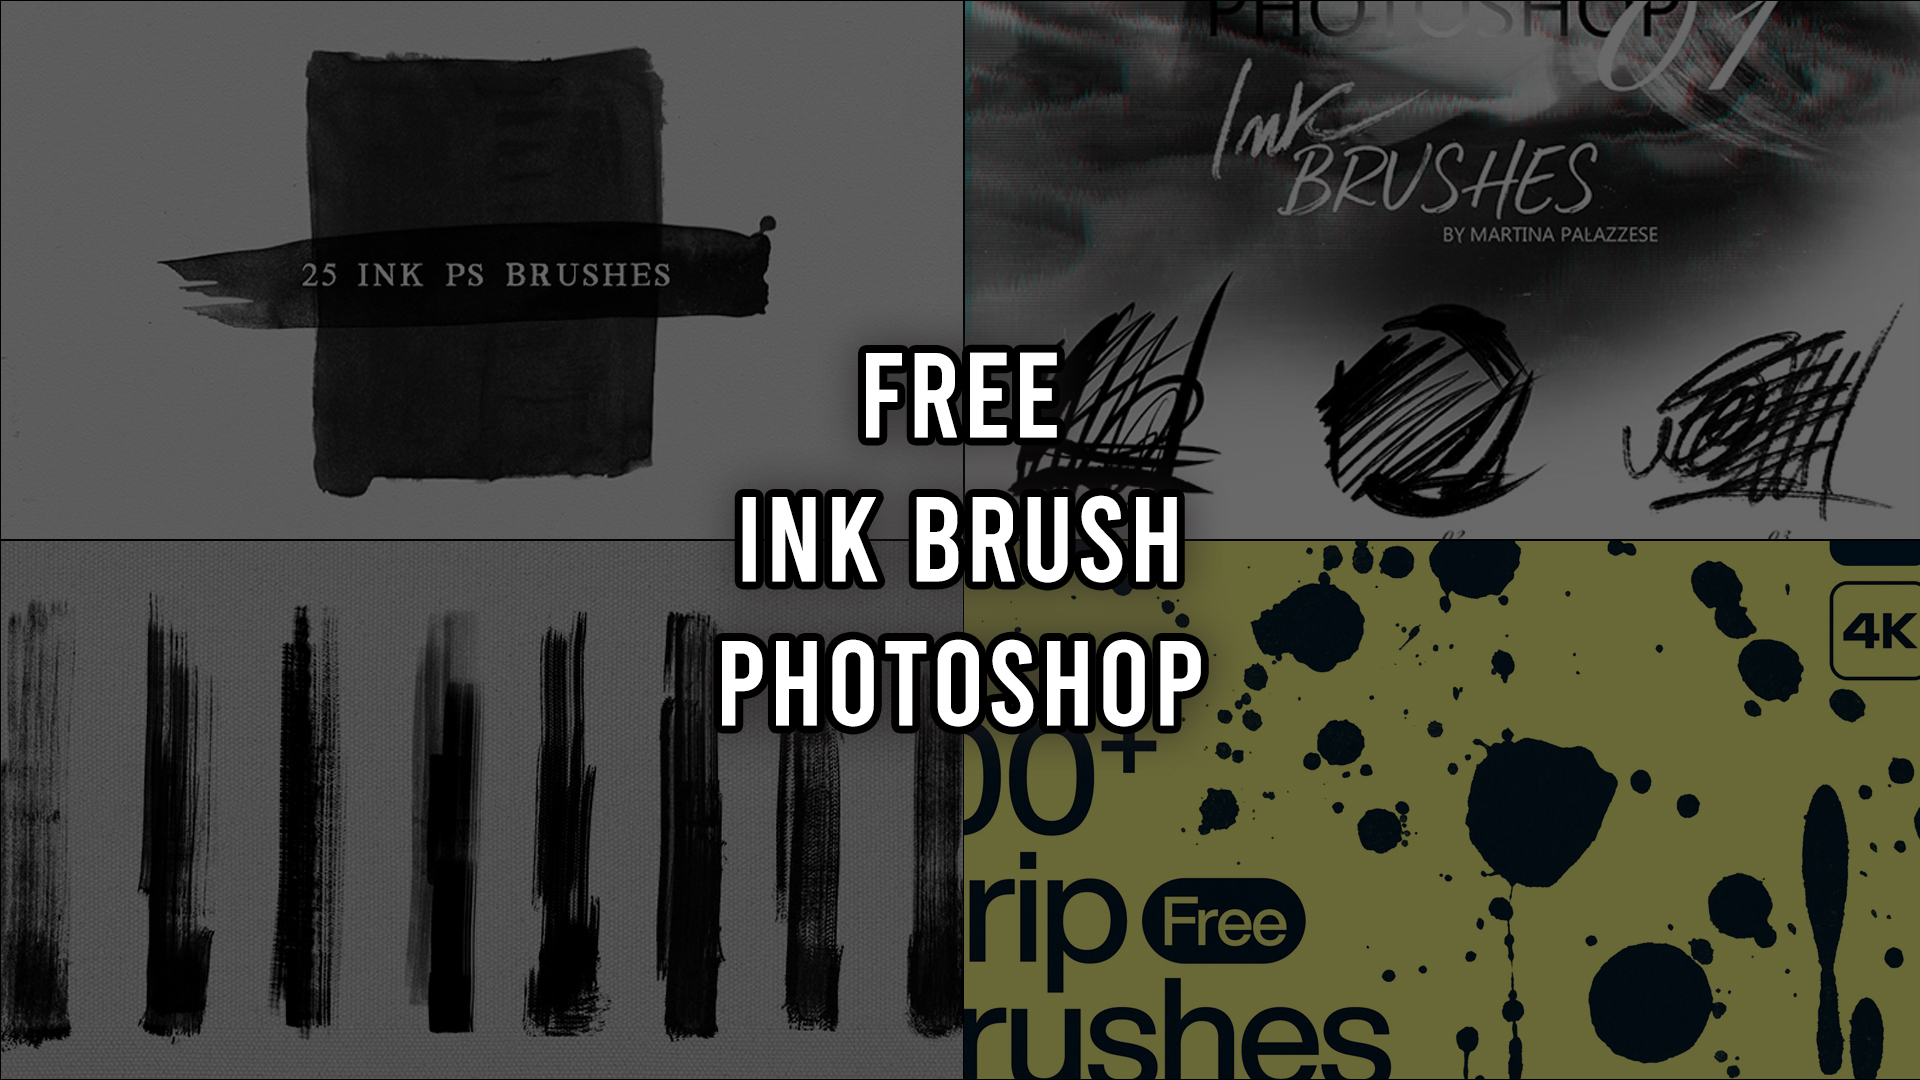 Free Ink Brush Photoshop